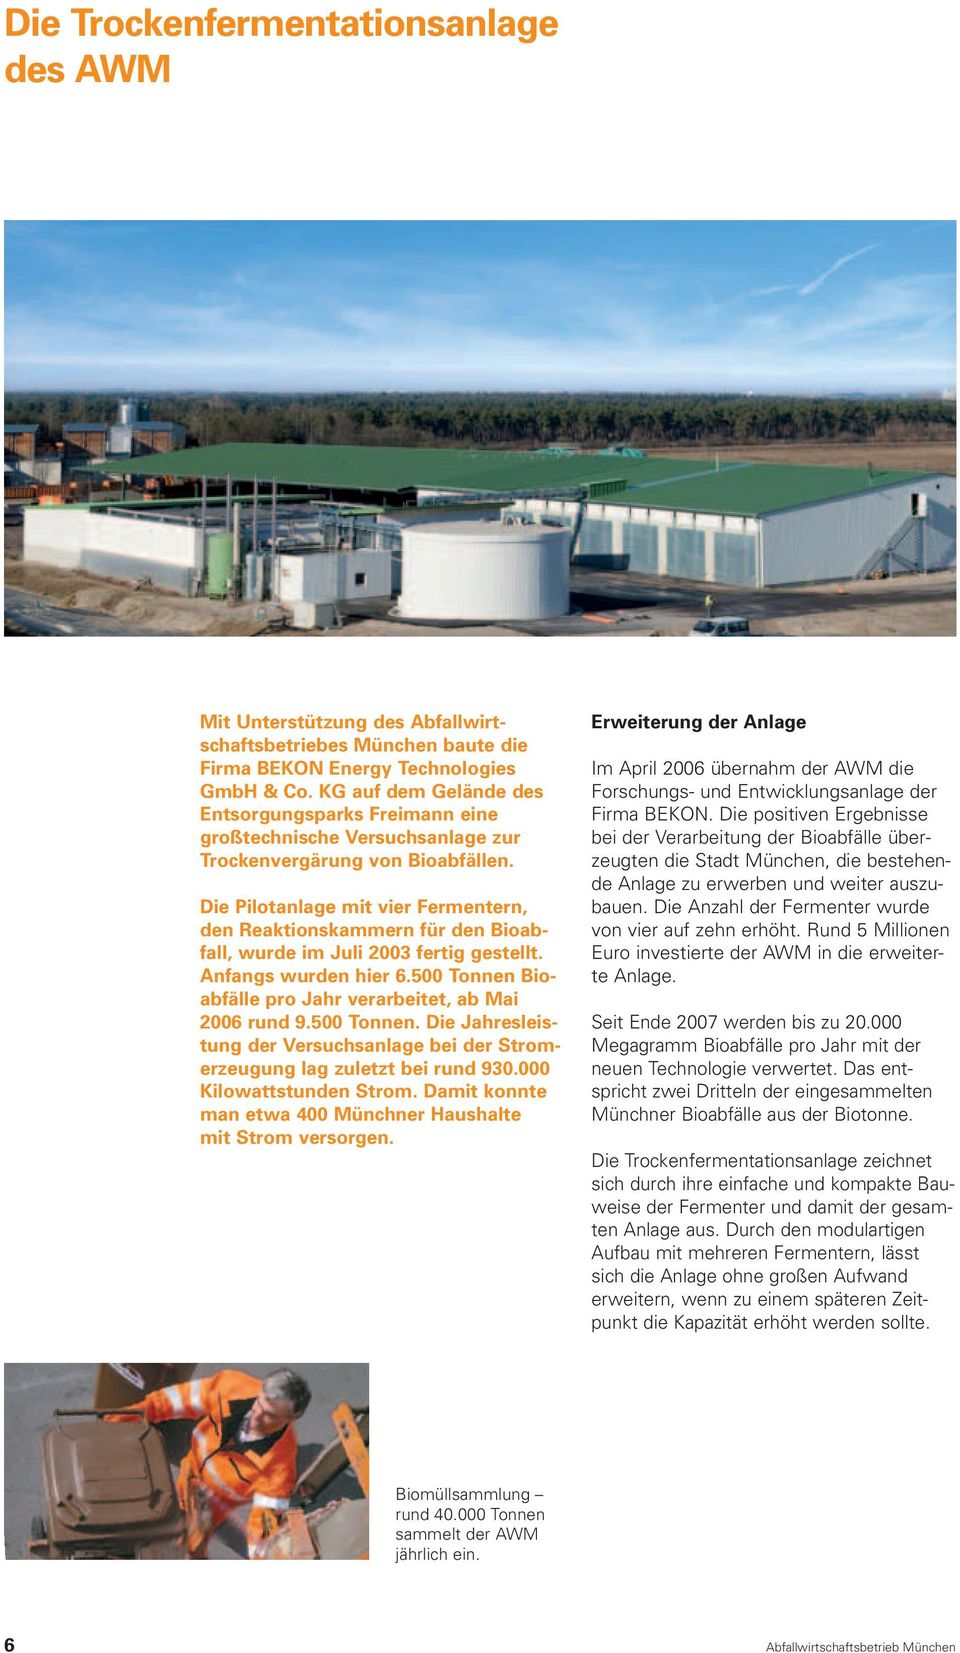 Die Pilotanlage mit vier Fermentern, den Reaktionskammern für den Bioabfall, wurde im Juli 2003 fertig gestellt. Anfangs wurden hier 6.500 Tonnen Bioabfälle pro Jahr verarbeitet, ab Mai 2006 rund 9.